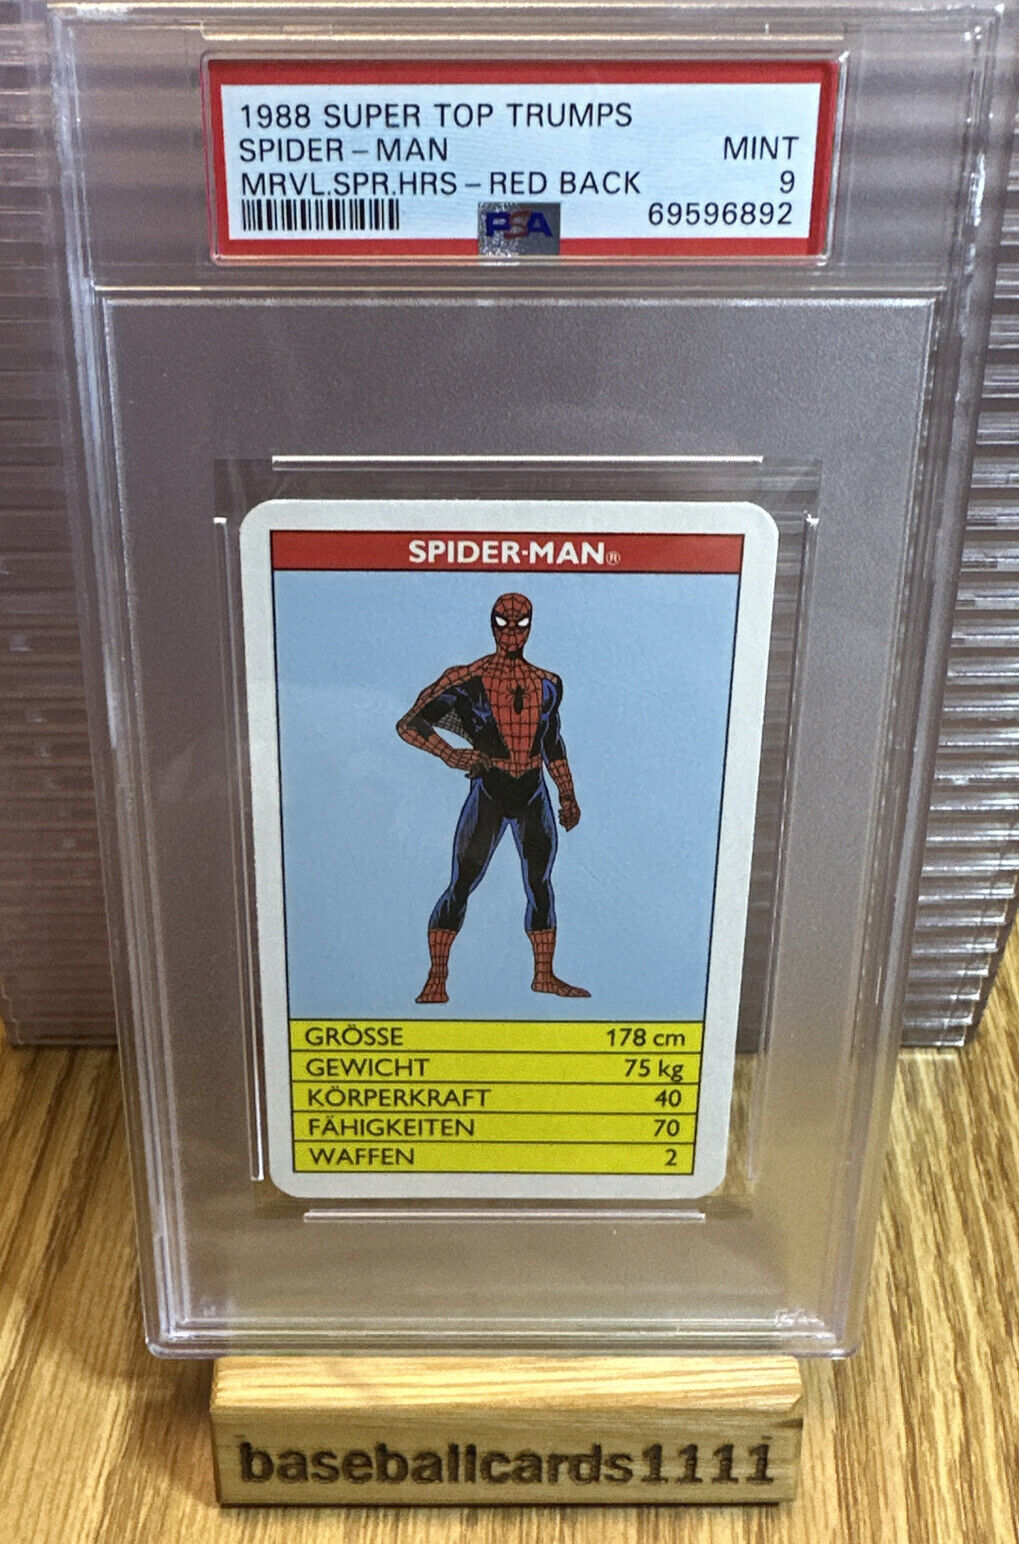 1988 Super Top Trumps Marvel Super Heroes Spiderman PSA 9 Pop 2 4E